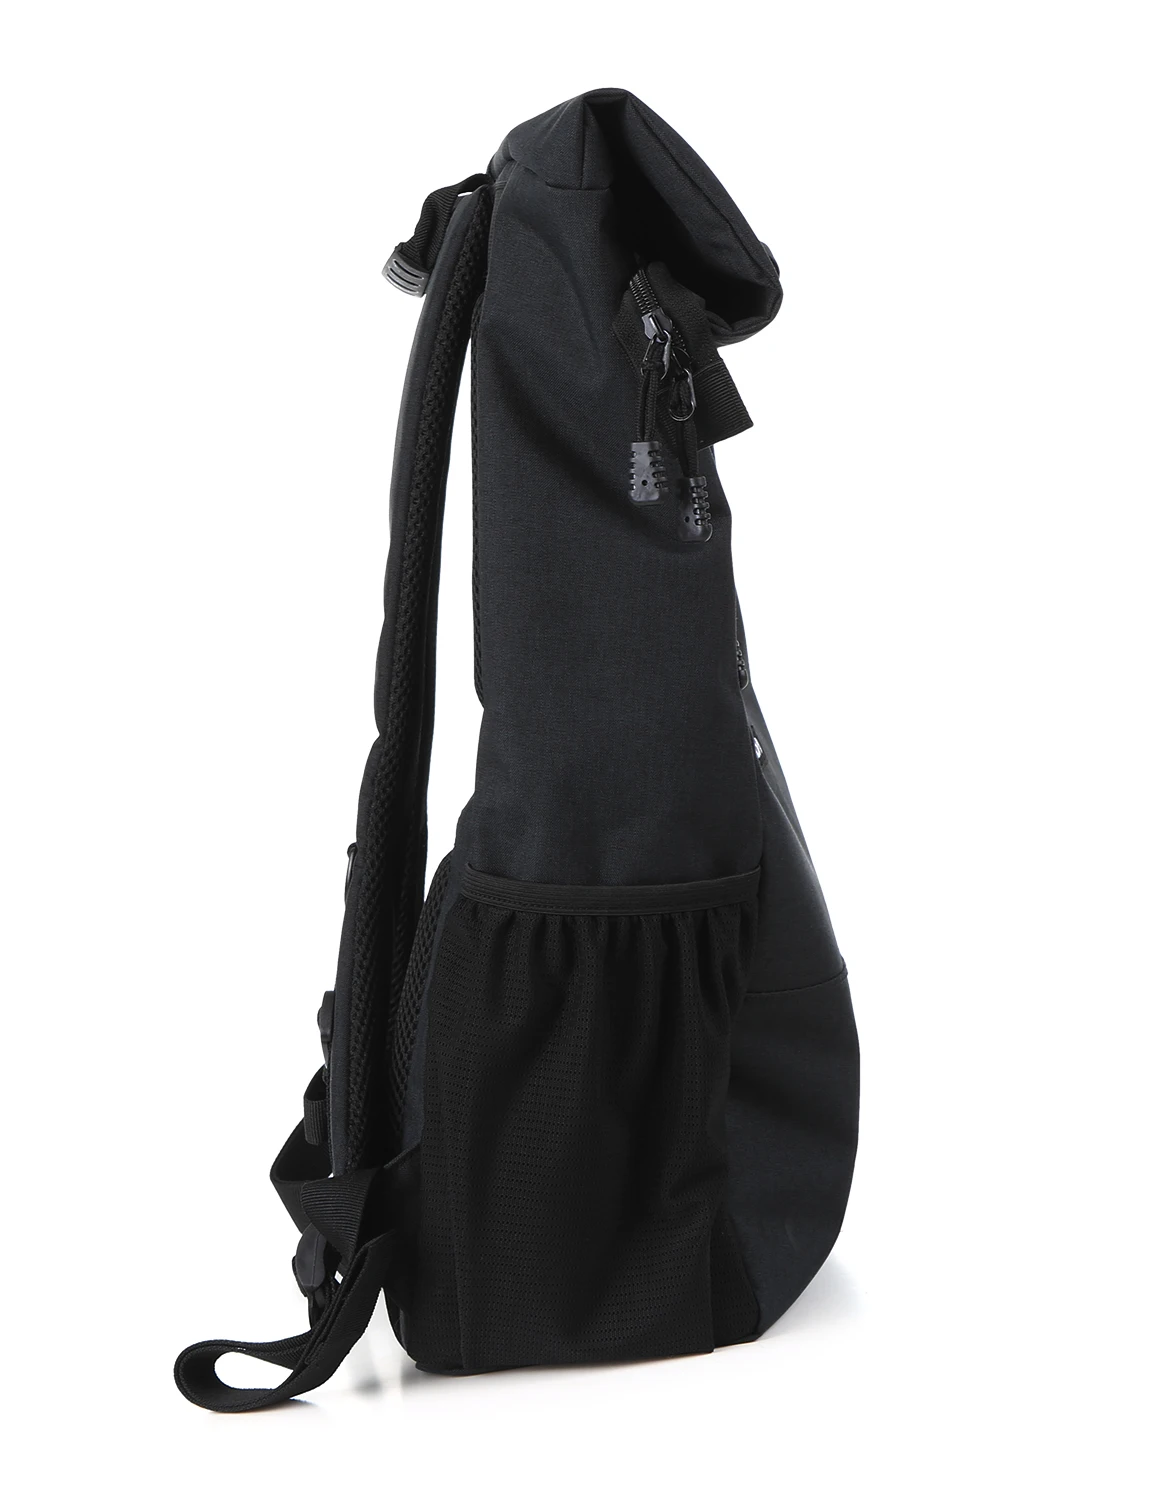 Lixada рулонный топ рюкзак для ноутбука легкий RollTop рюкзак многоцелевой модный школьный дорожный велосипедный рюкзак сумка 18L-26L